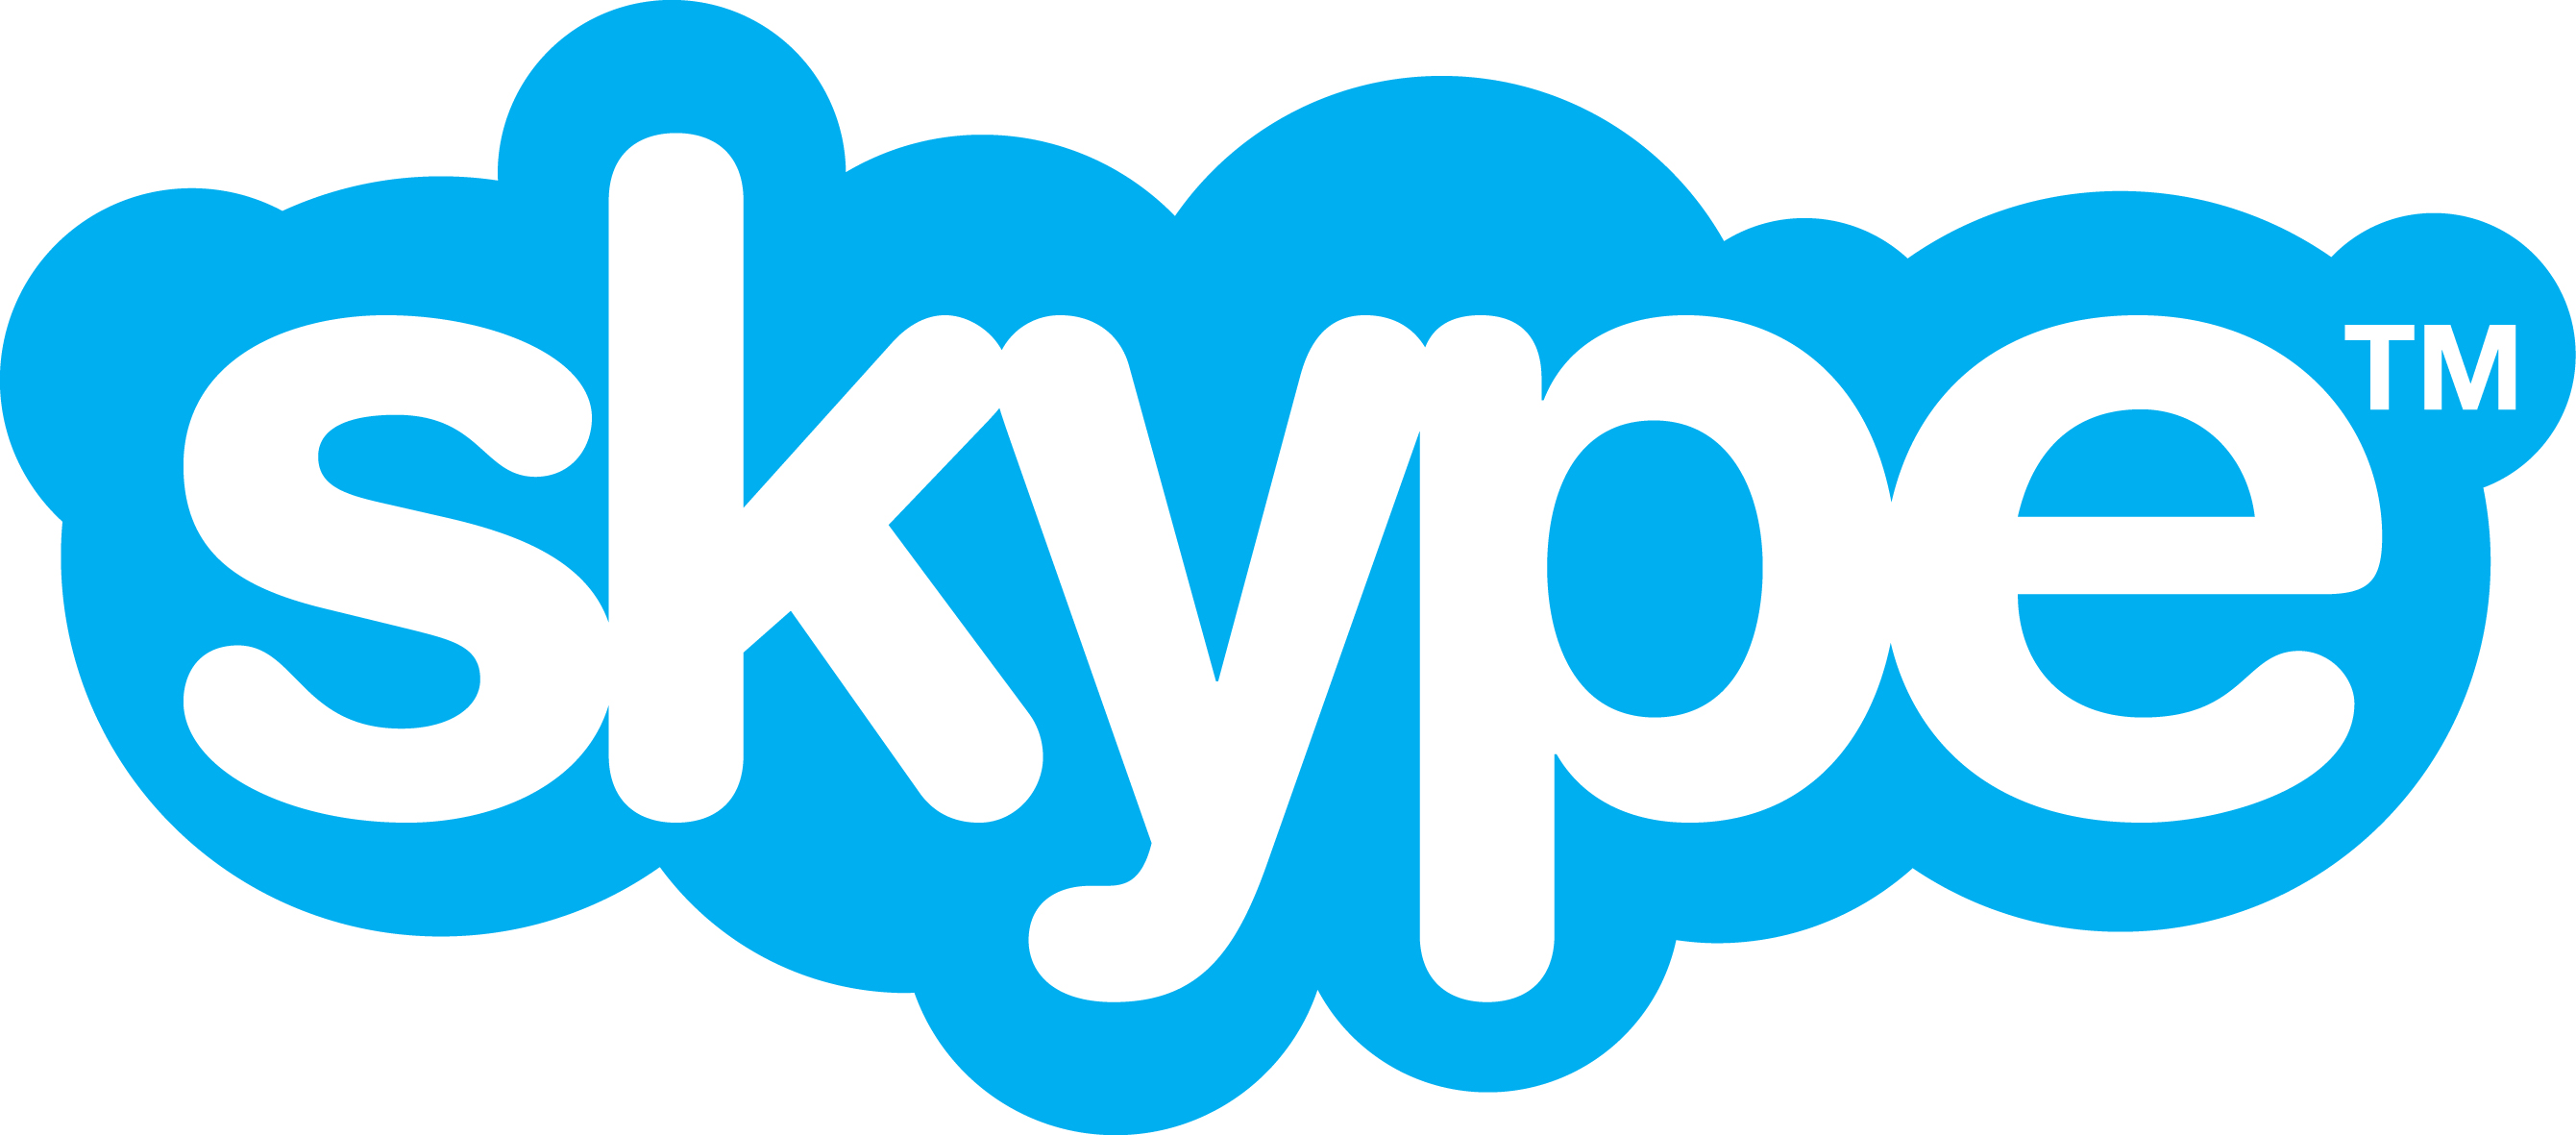 Ý nghĩa tên thương hiệu Skype